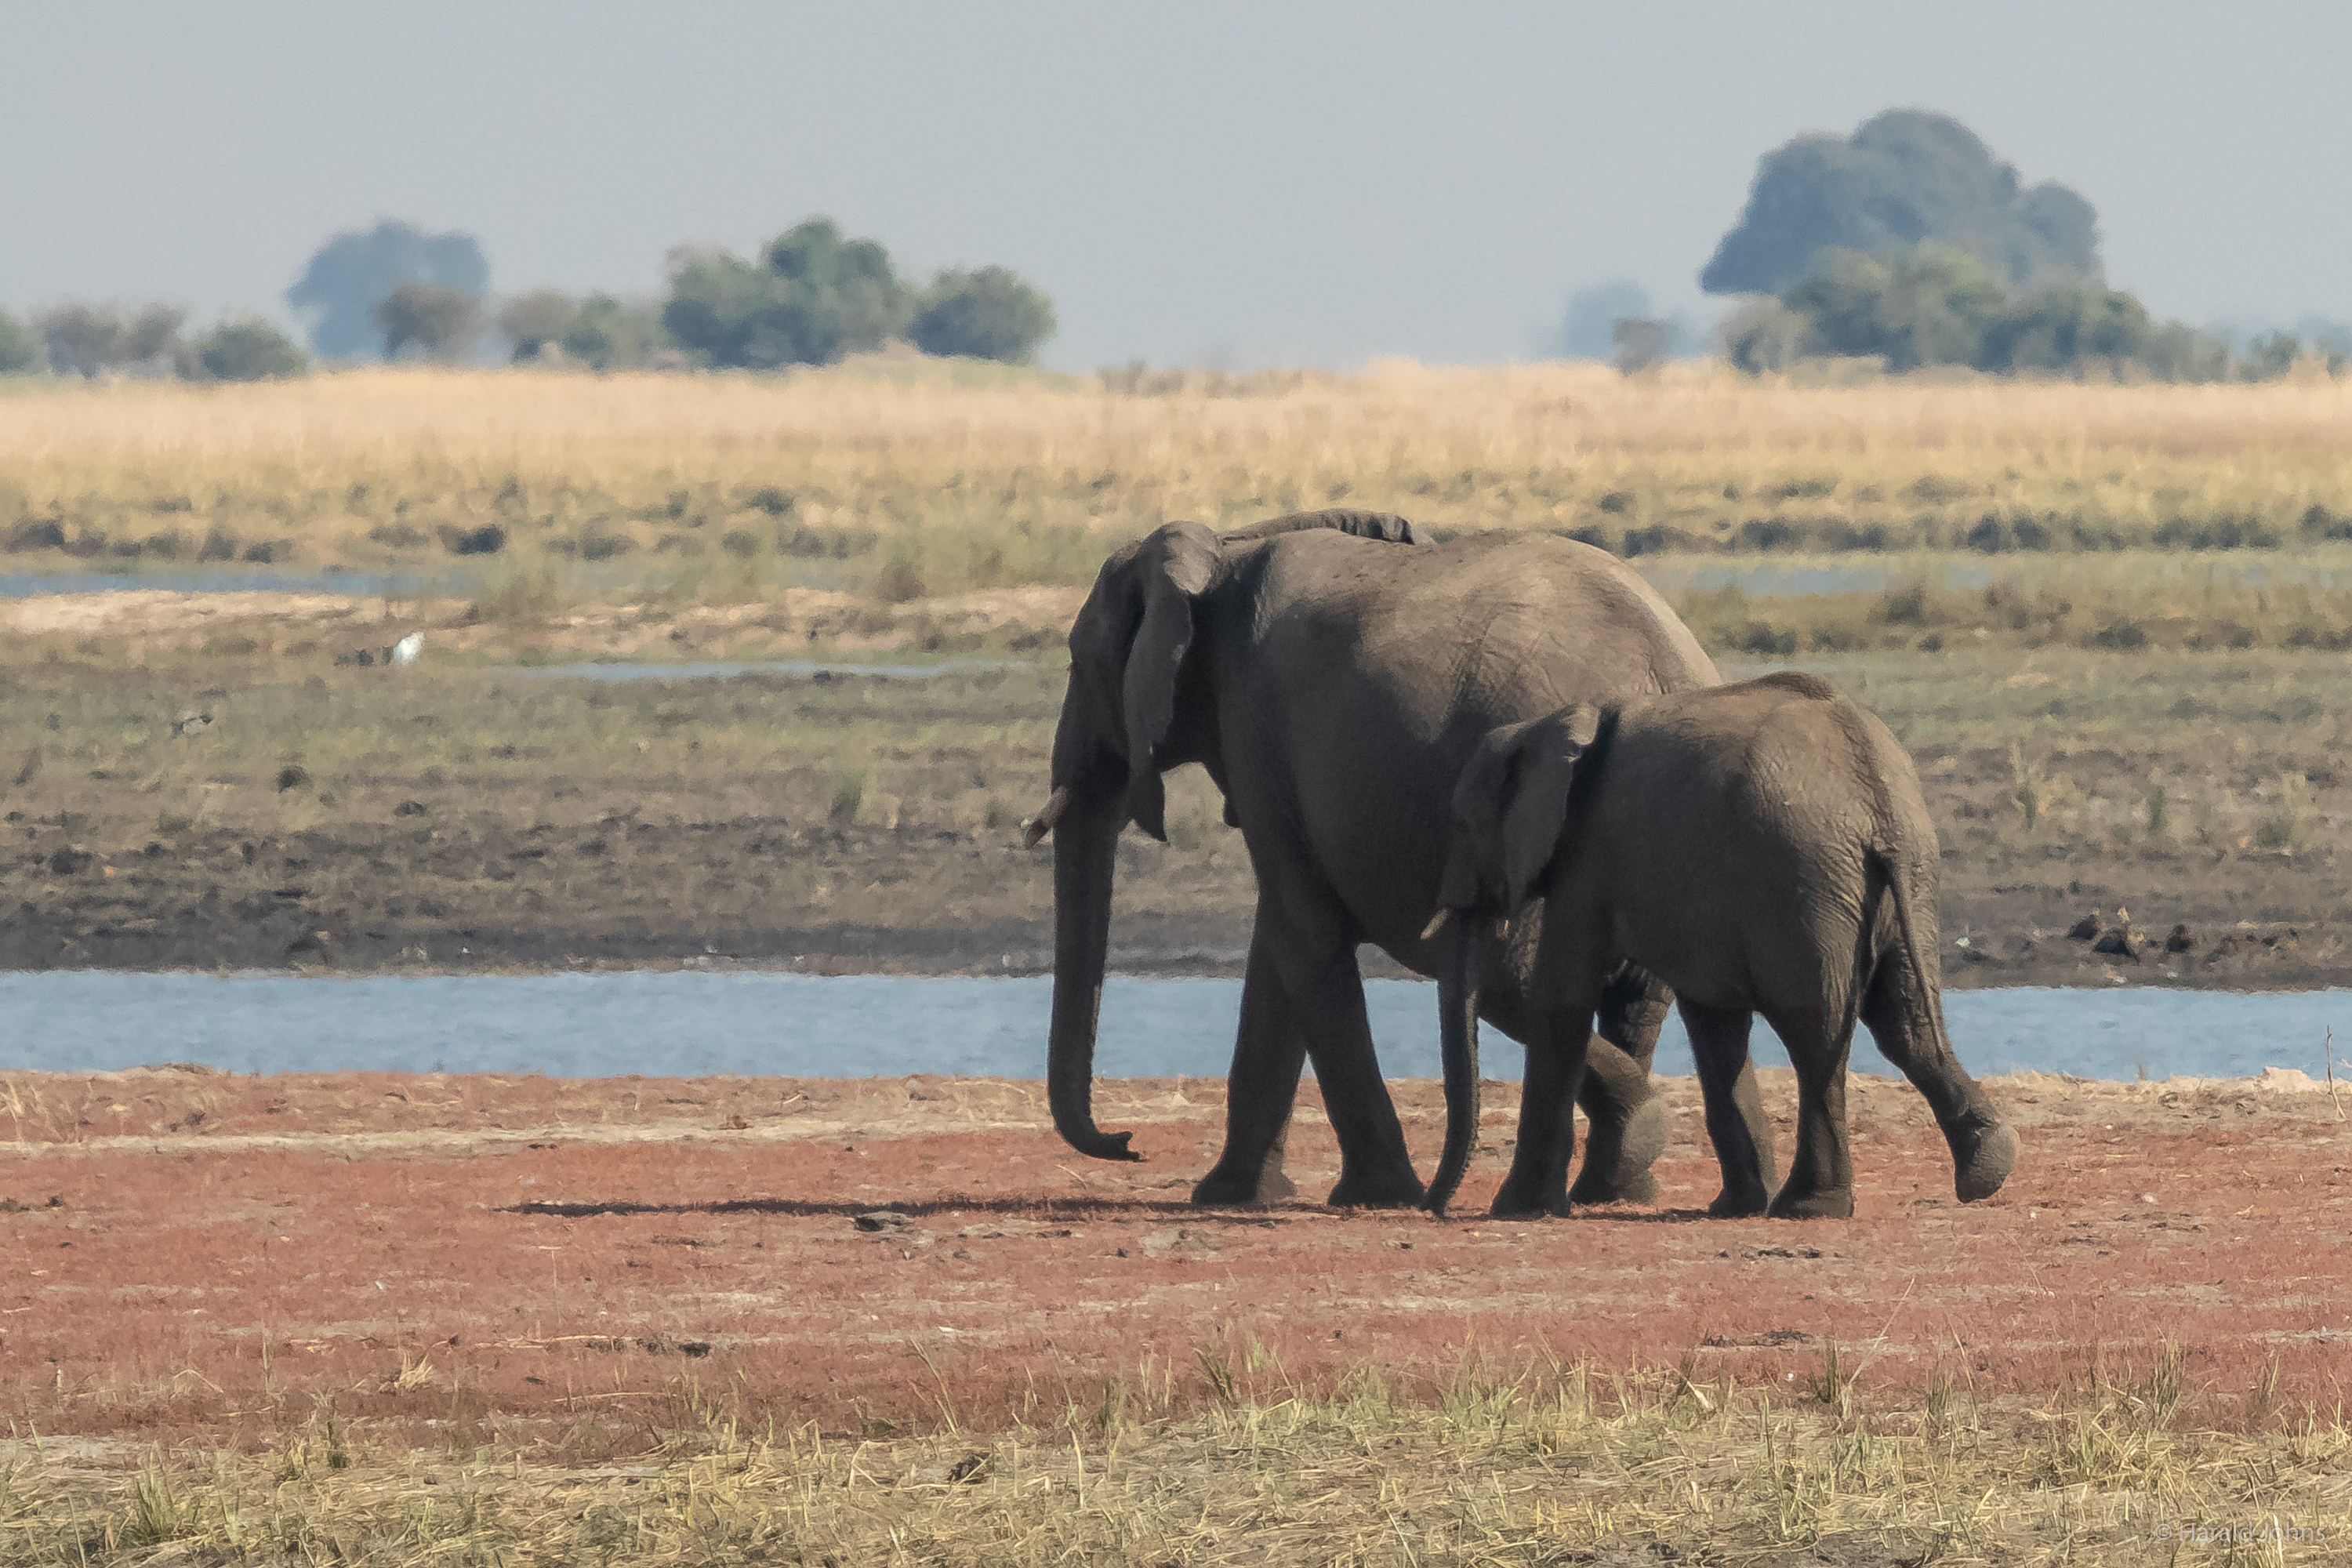 Elefanten in der Cuando-Schleife bei Serondela im Chobe-Nationalpark